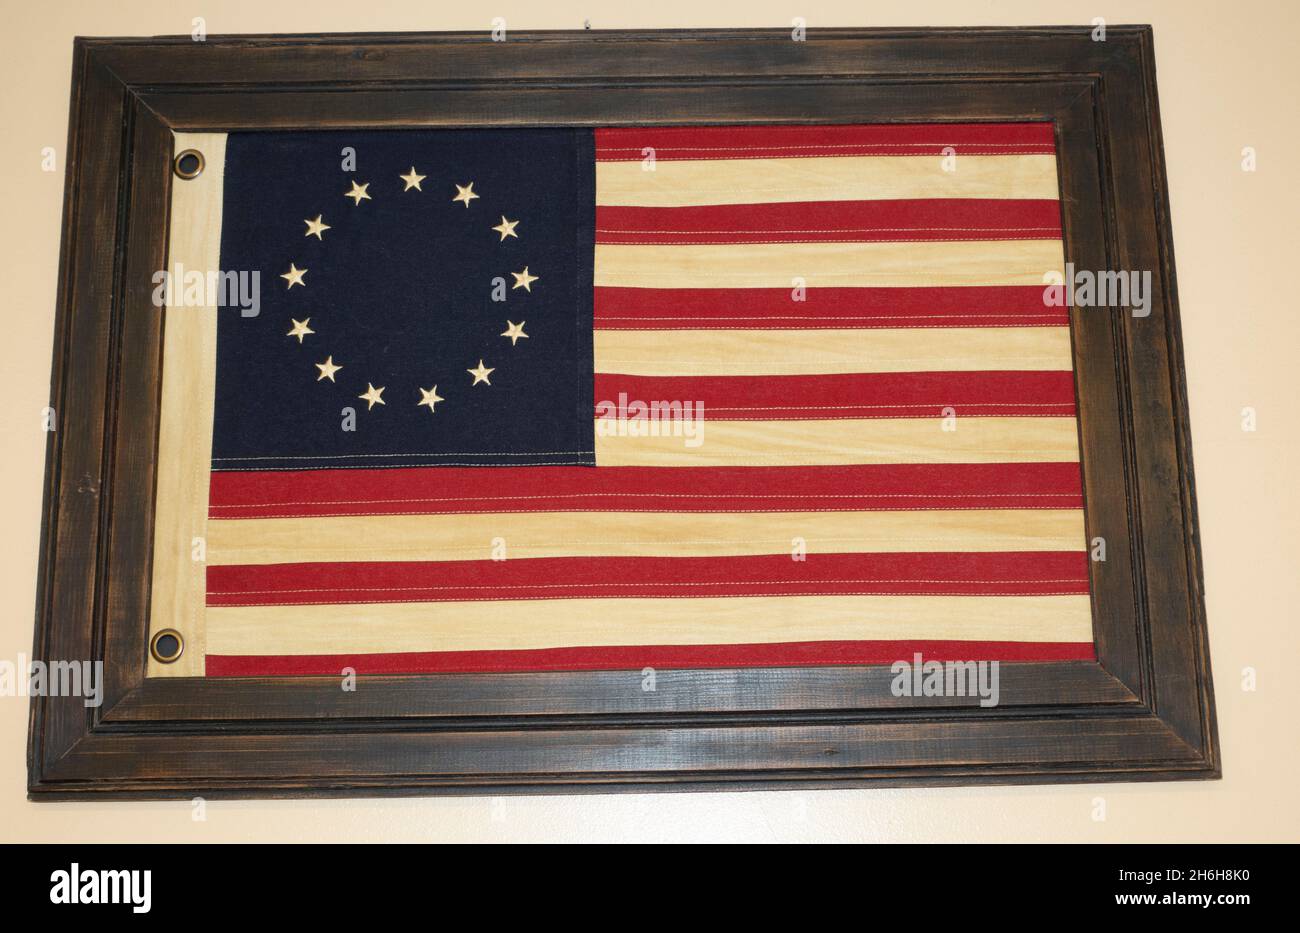 Dreizehn Sterne Betsy Ross Flagge, die die 13 Kolonien repräsentiert, die während des revolutionären Krieges für die Unabhängigkeit kämpften. Minneapolis Minnesota, USA Stockfoto